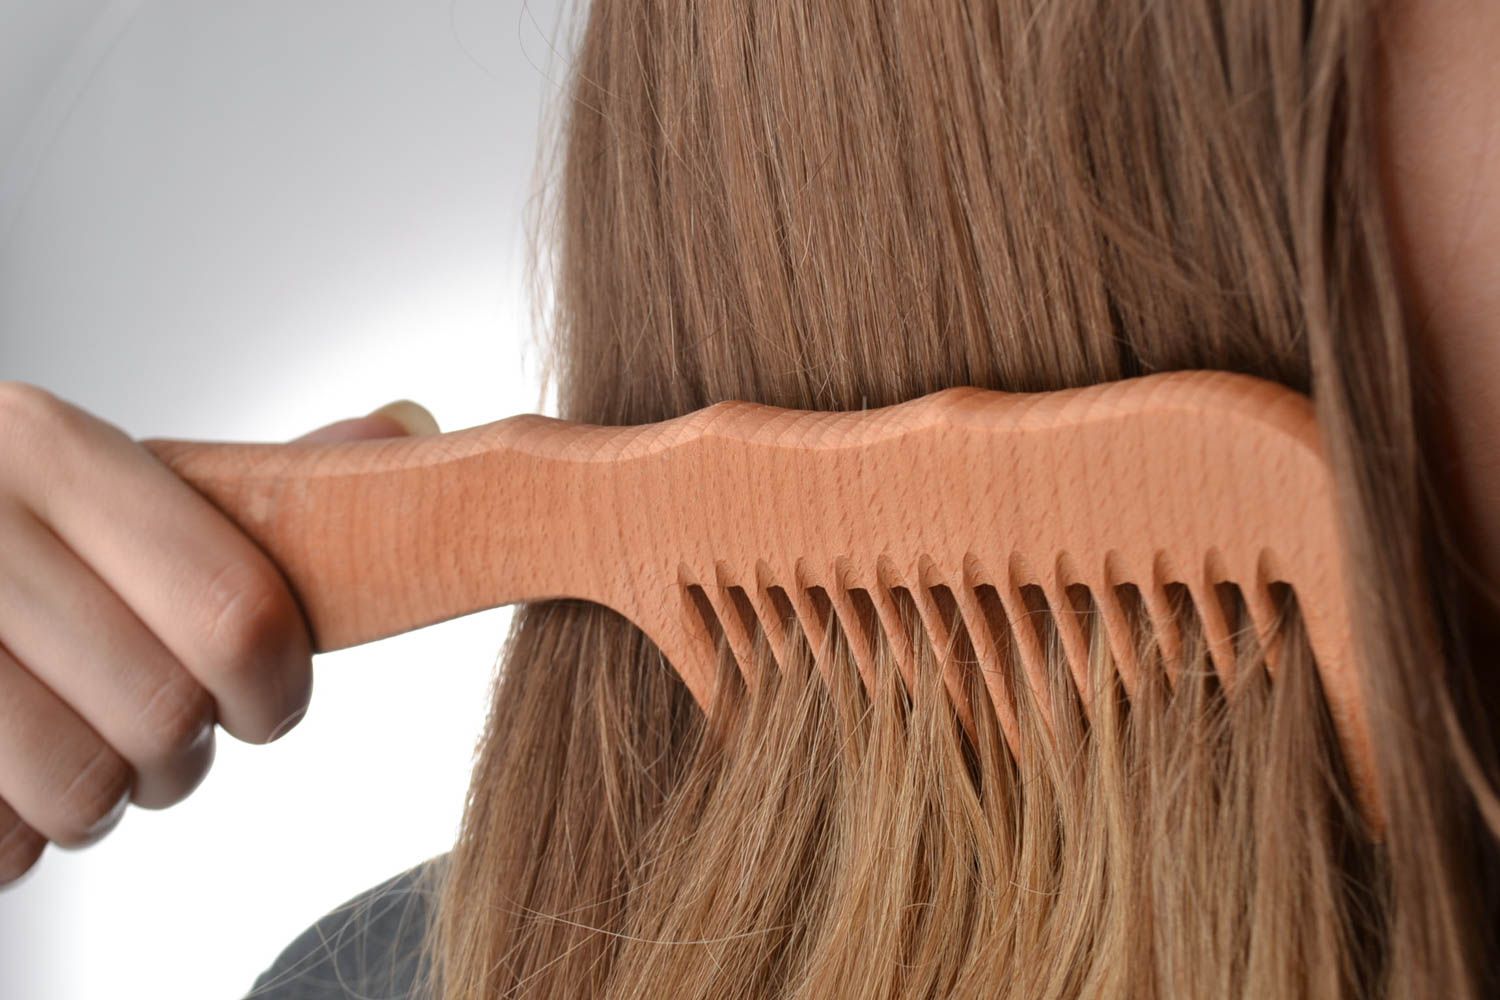 Деревянная расческа для волос натуральная узкая однорядная удобная ручной работы фото 1